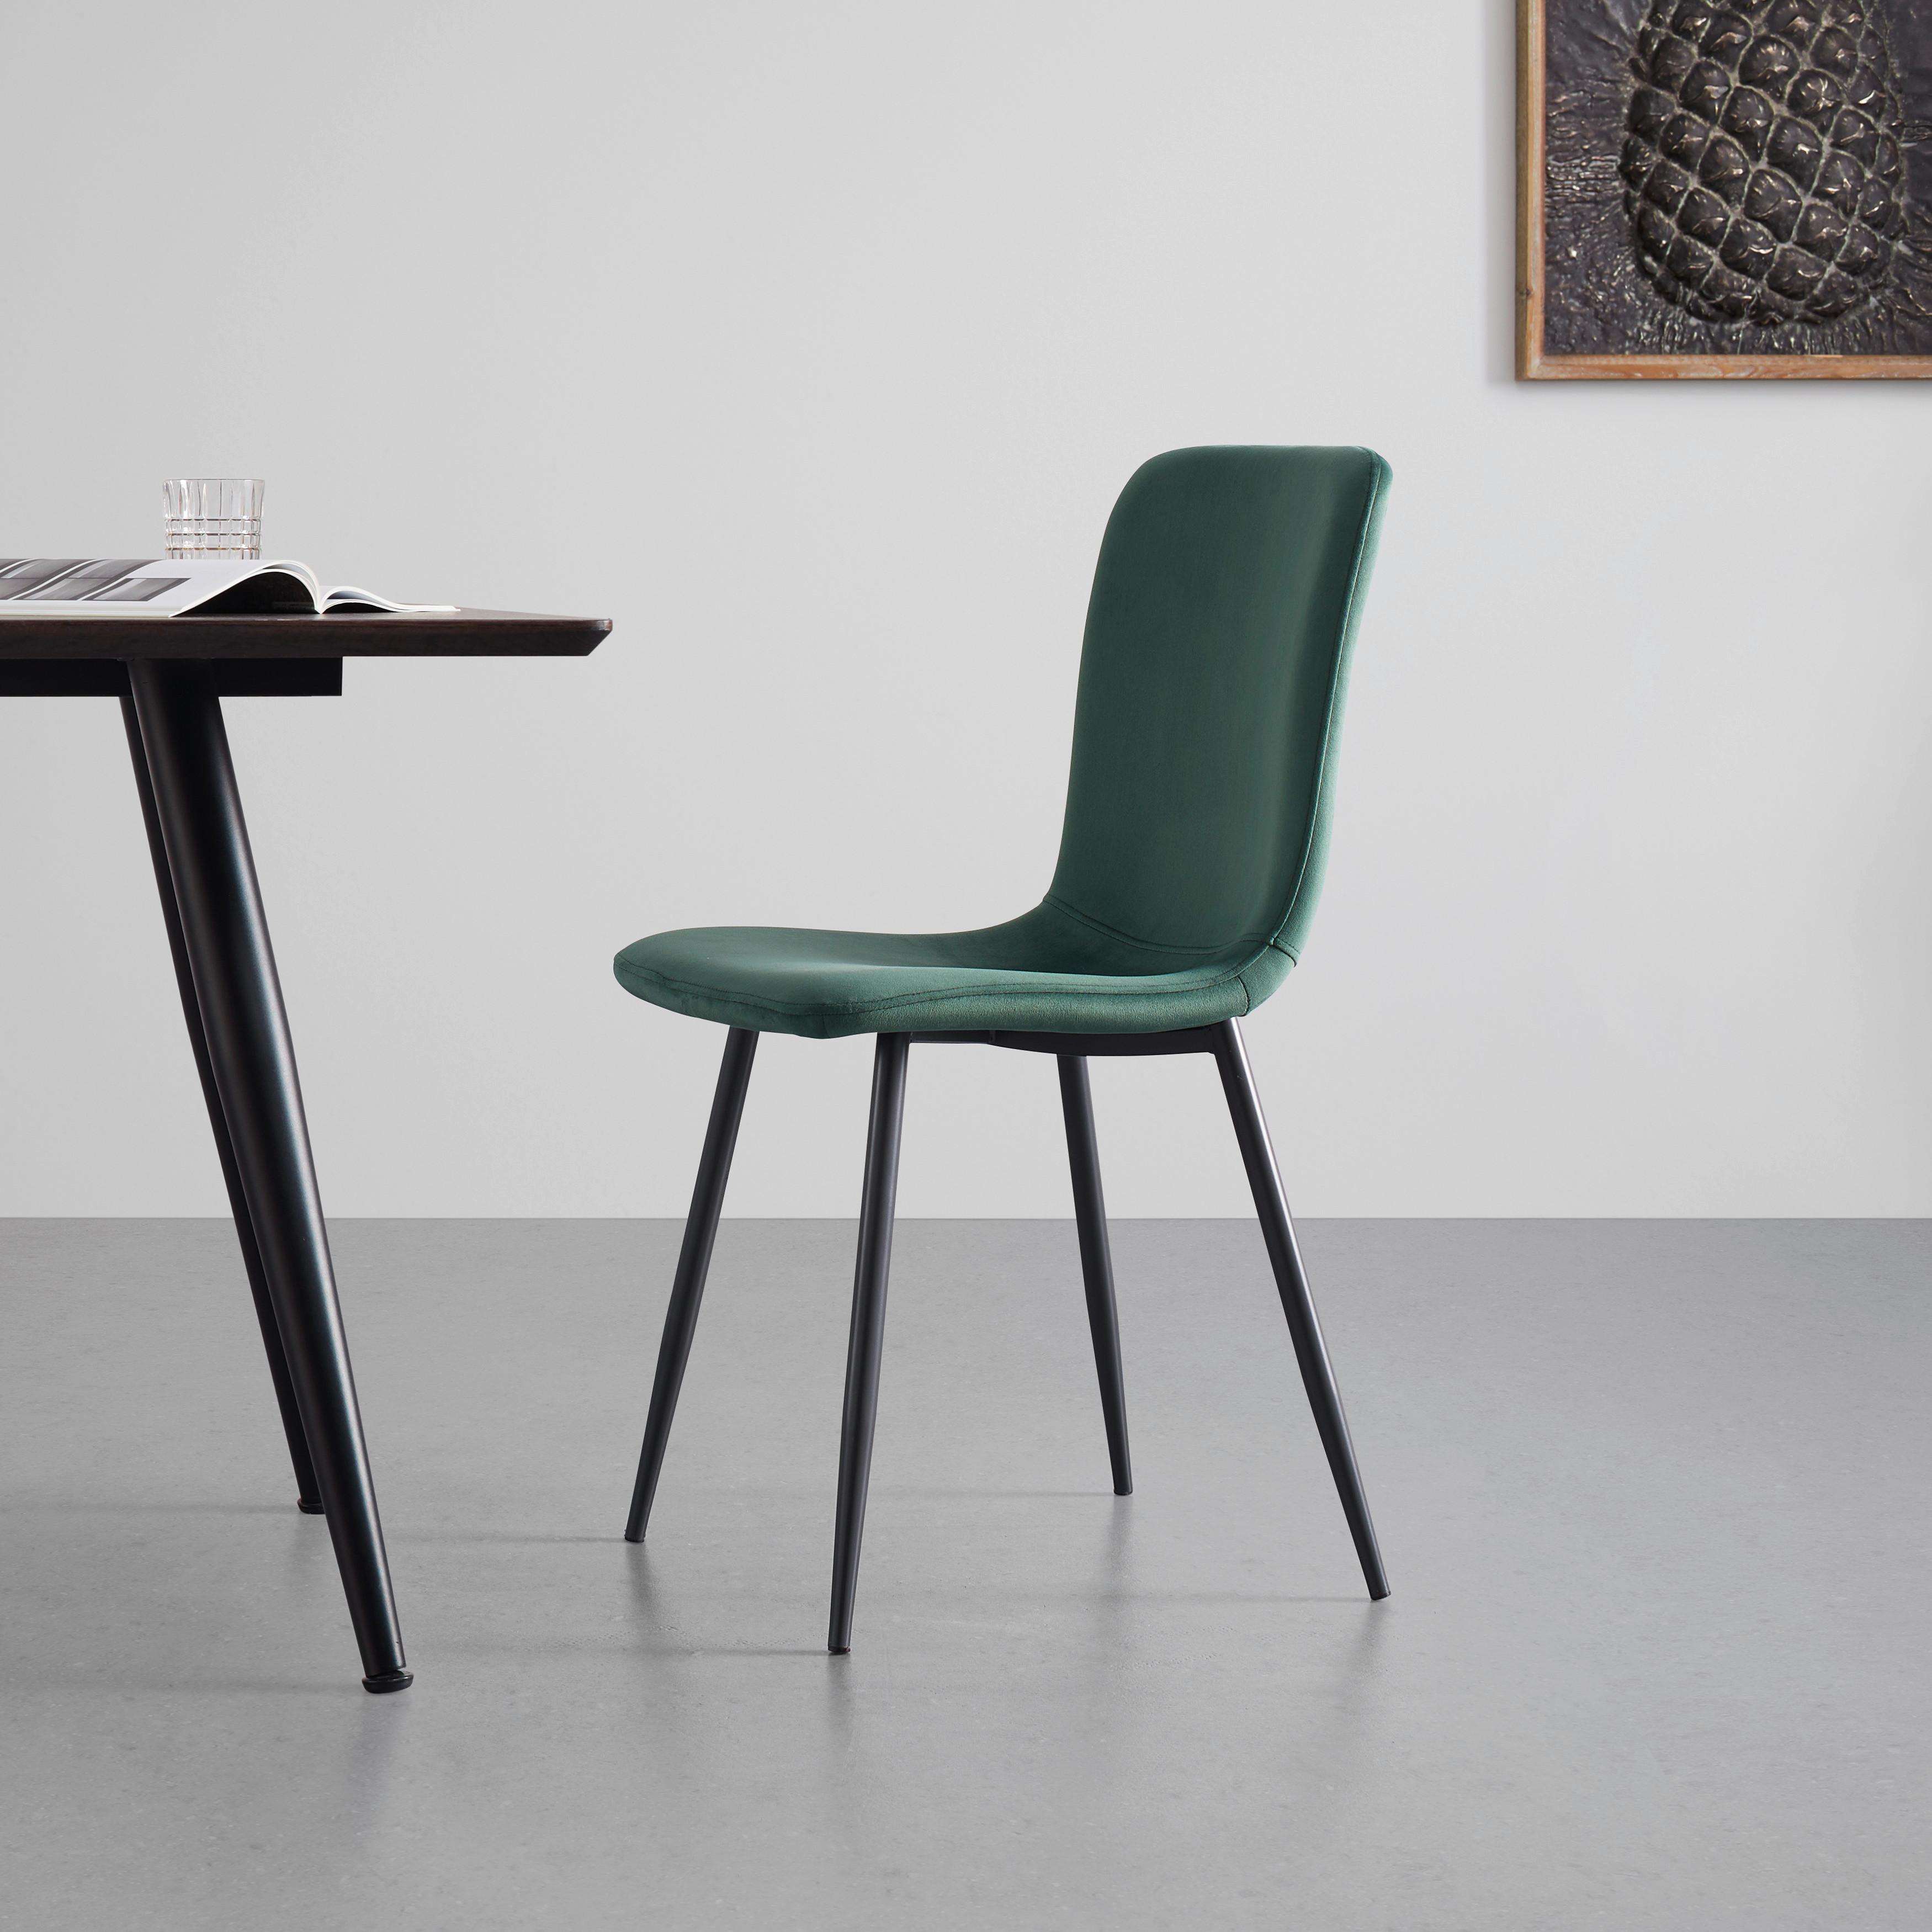 Moderní Židle Elif Zelená - zelená/tmavě šedá, Moderní, kov/textil (43/86/54,5cm) - P & B